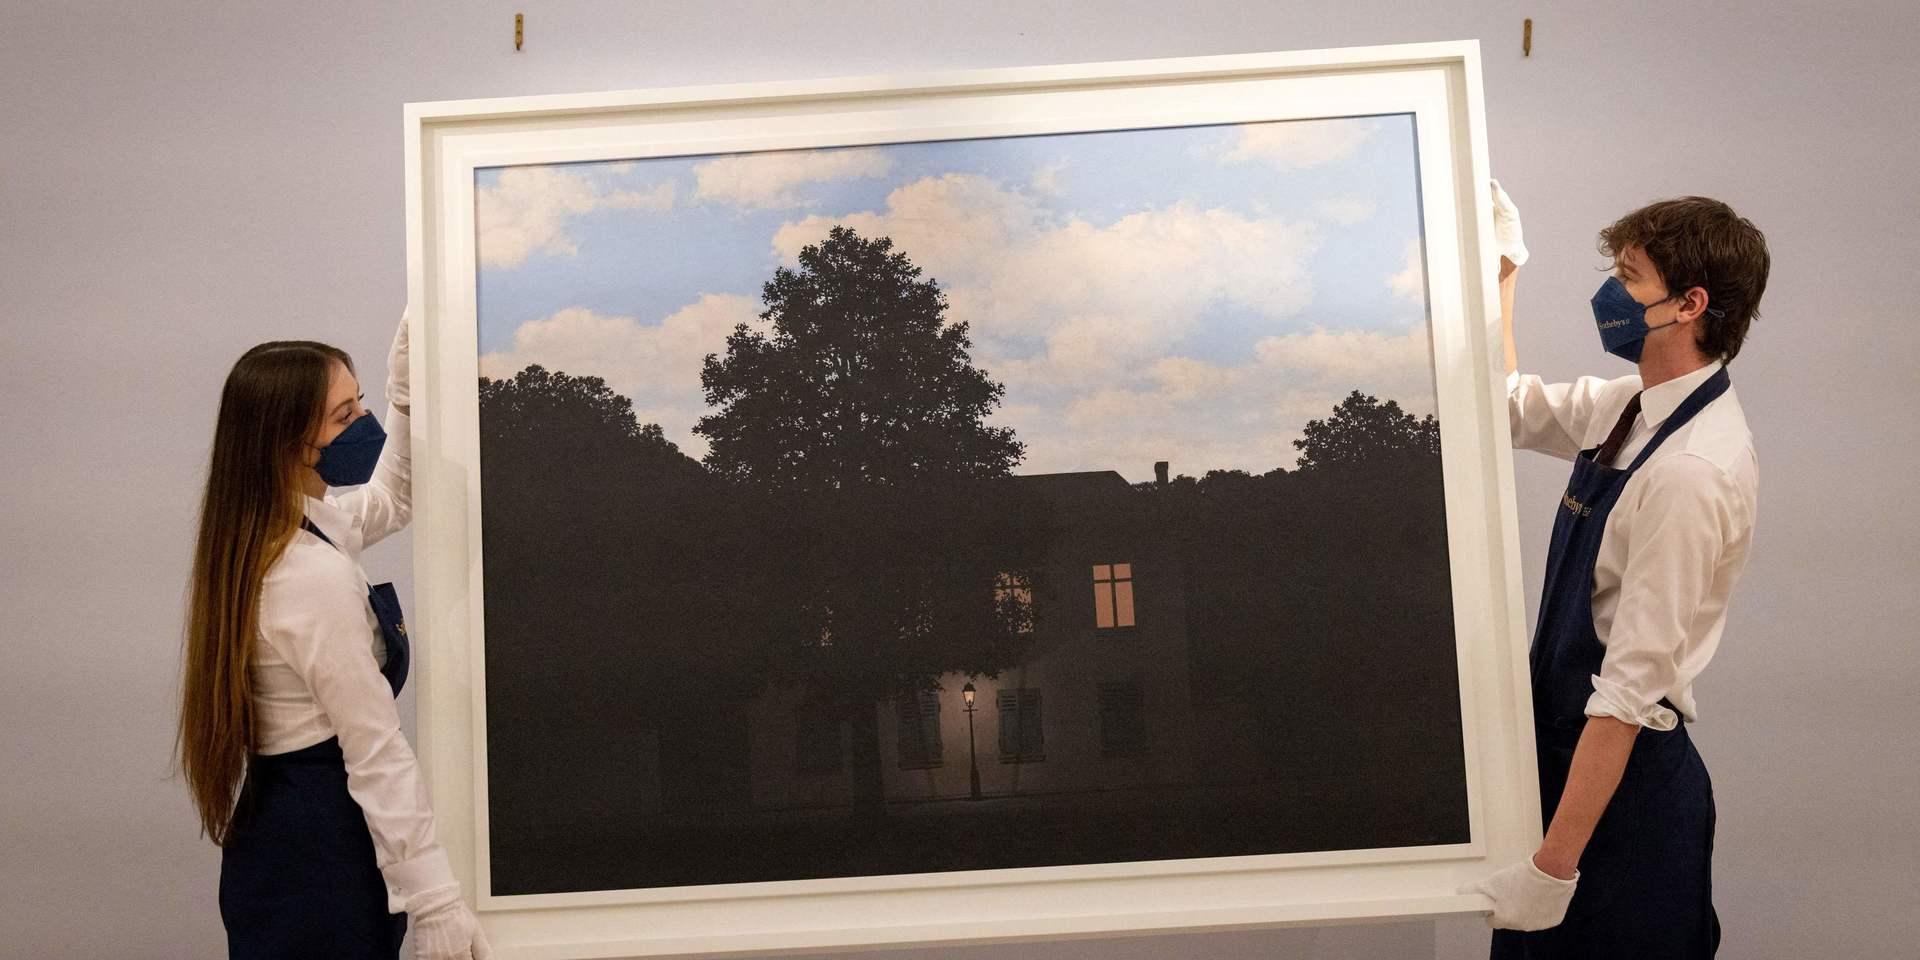 Målningen 'L'empire des lumieres' av den belgiske konstnären René Magritte har sålts för motsvarande nästan 770 miljoner svenska kronor på en auktion i London.